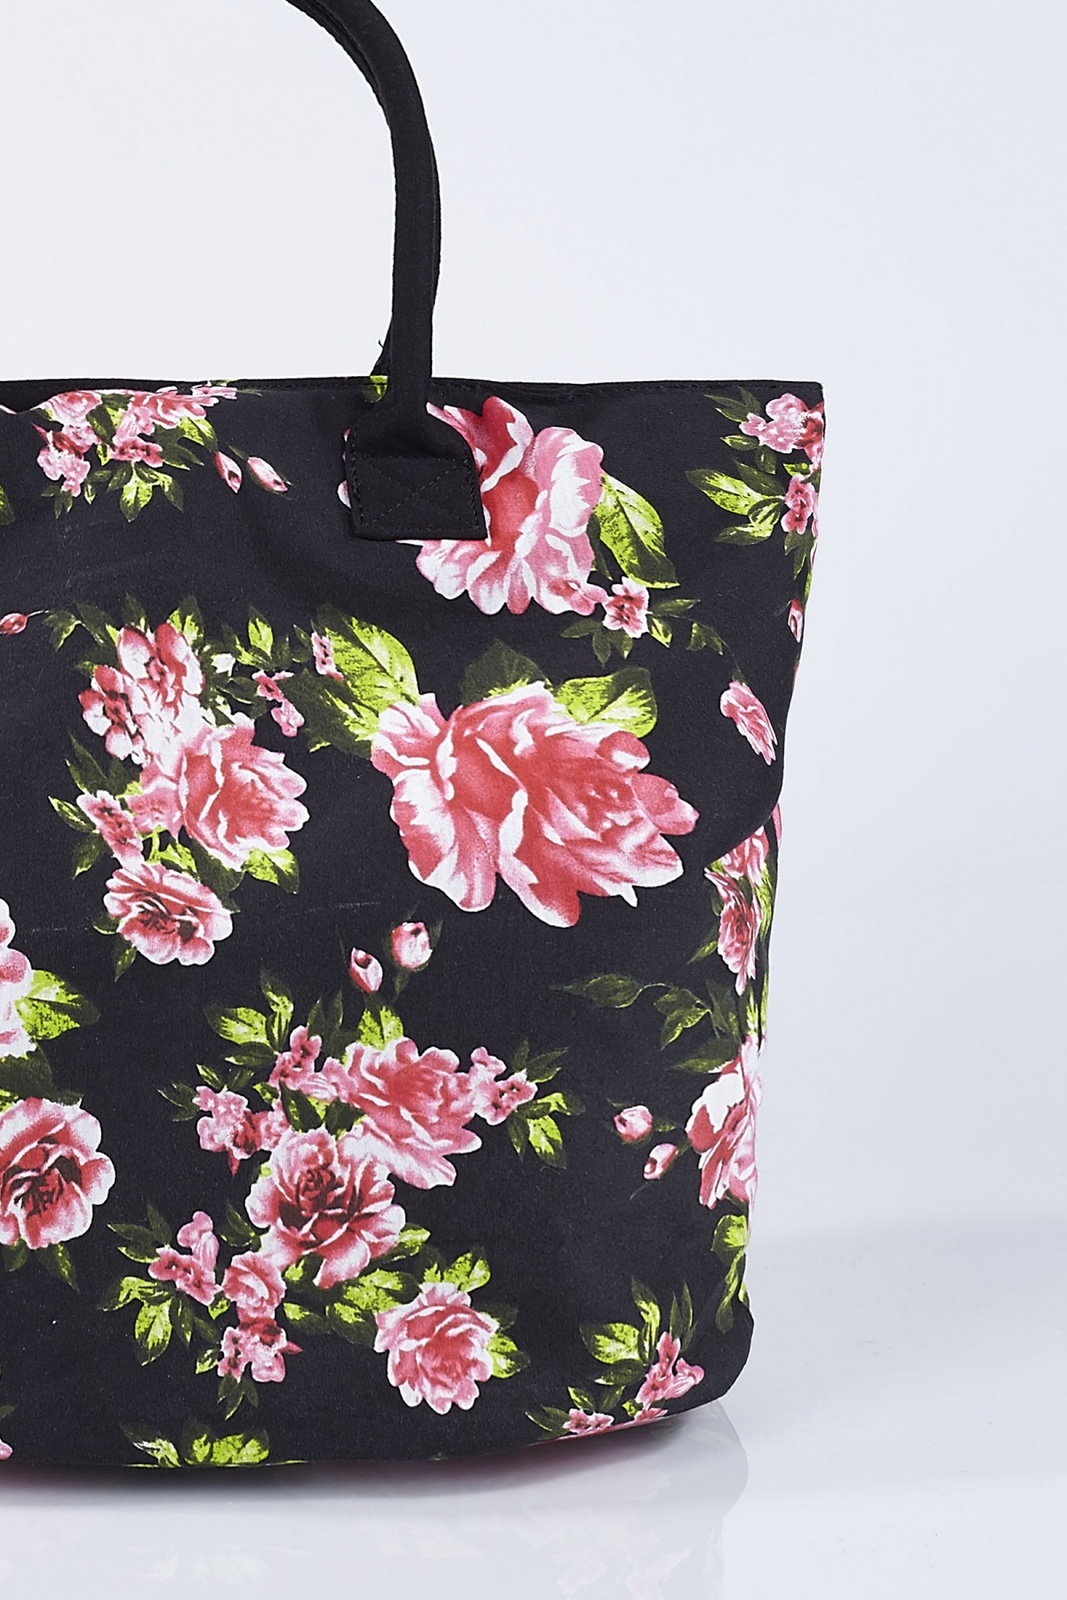 Terranova fekete virágos bevásárló táska 2015.02.28 fotója